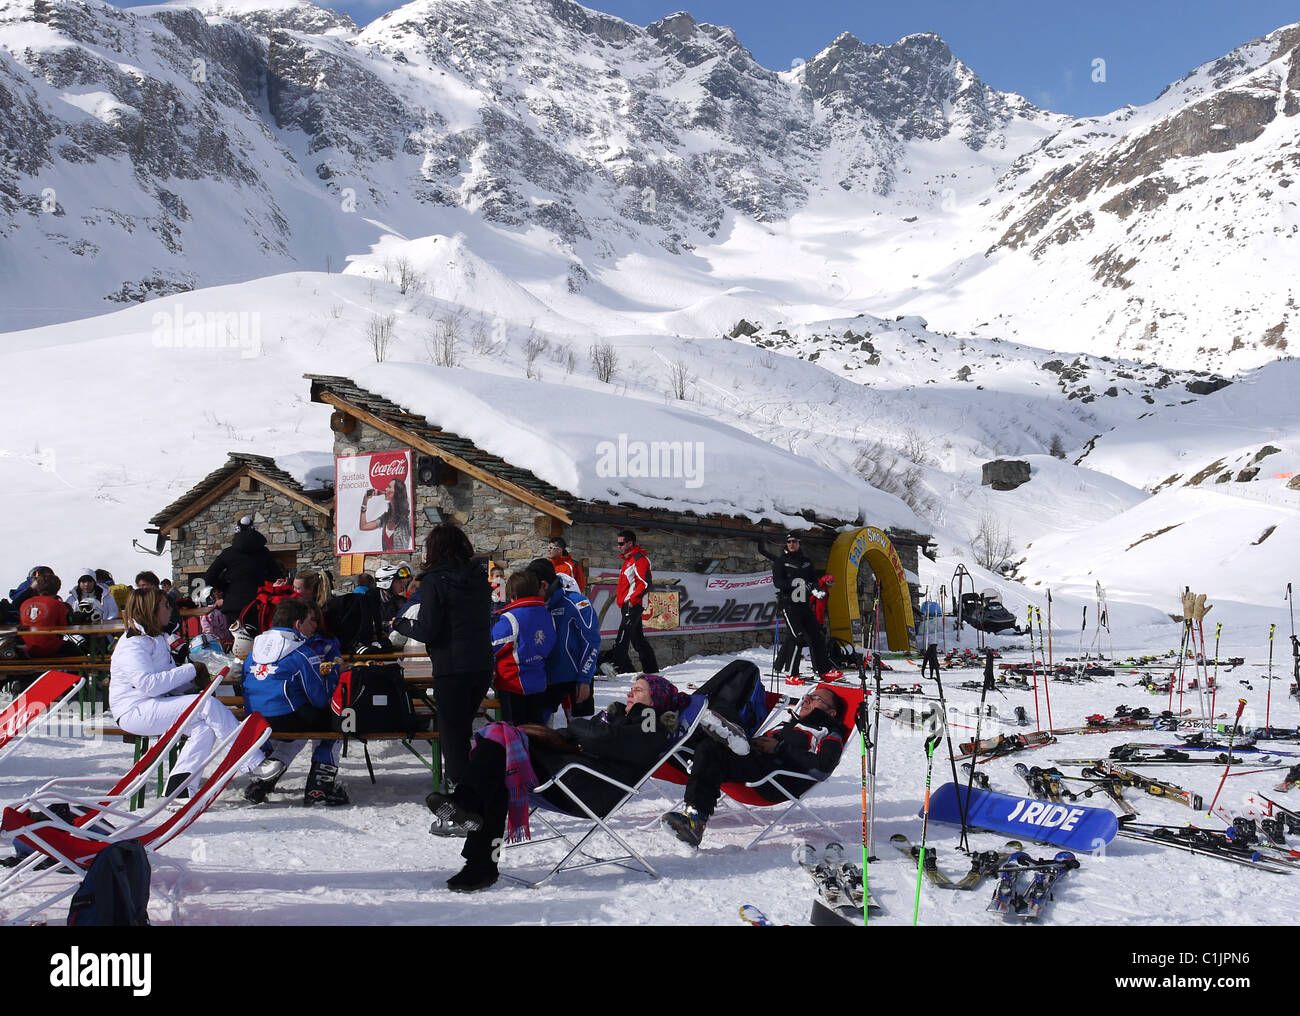 Restaurante en las laderas, en la estación de esquí Alagna Italia Foto de stock